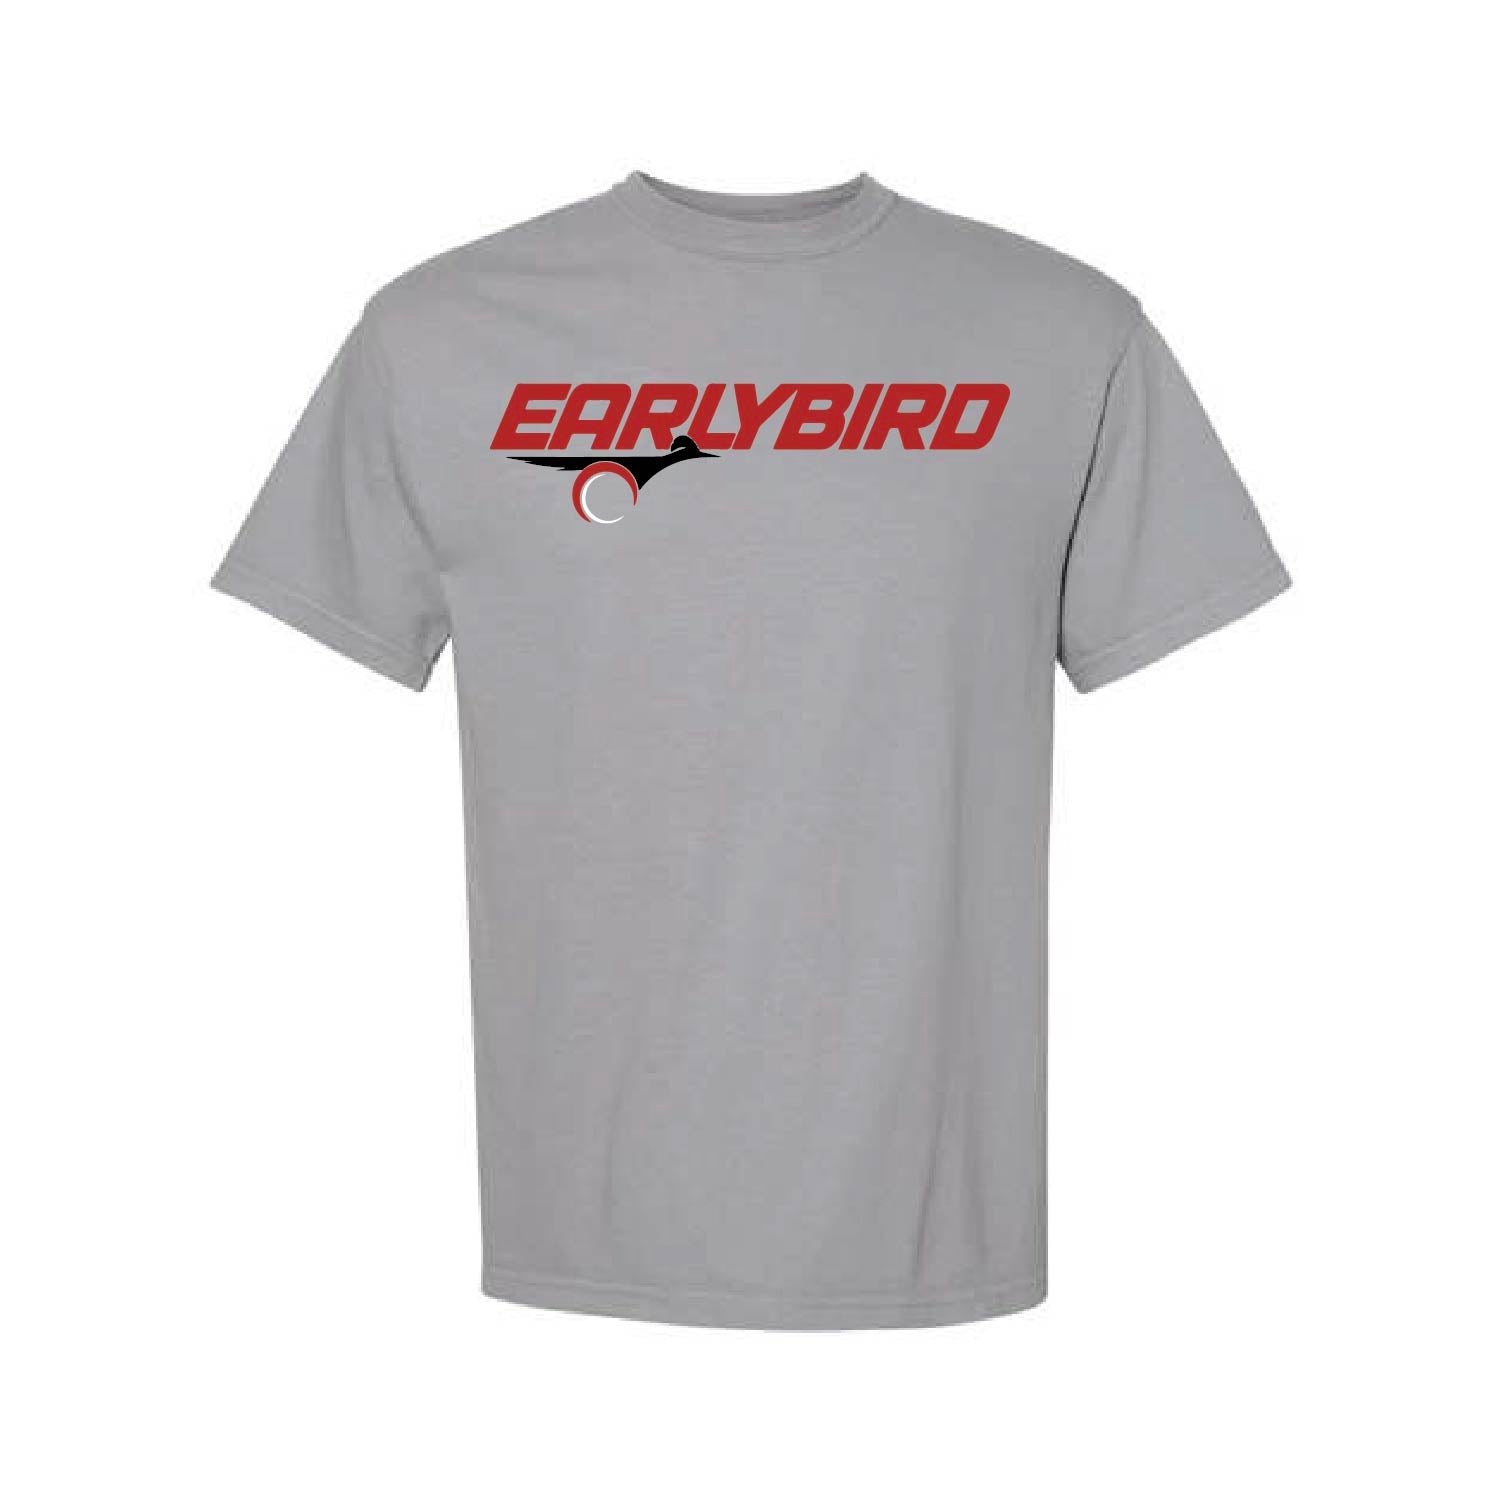 Earlybird Shirts